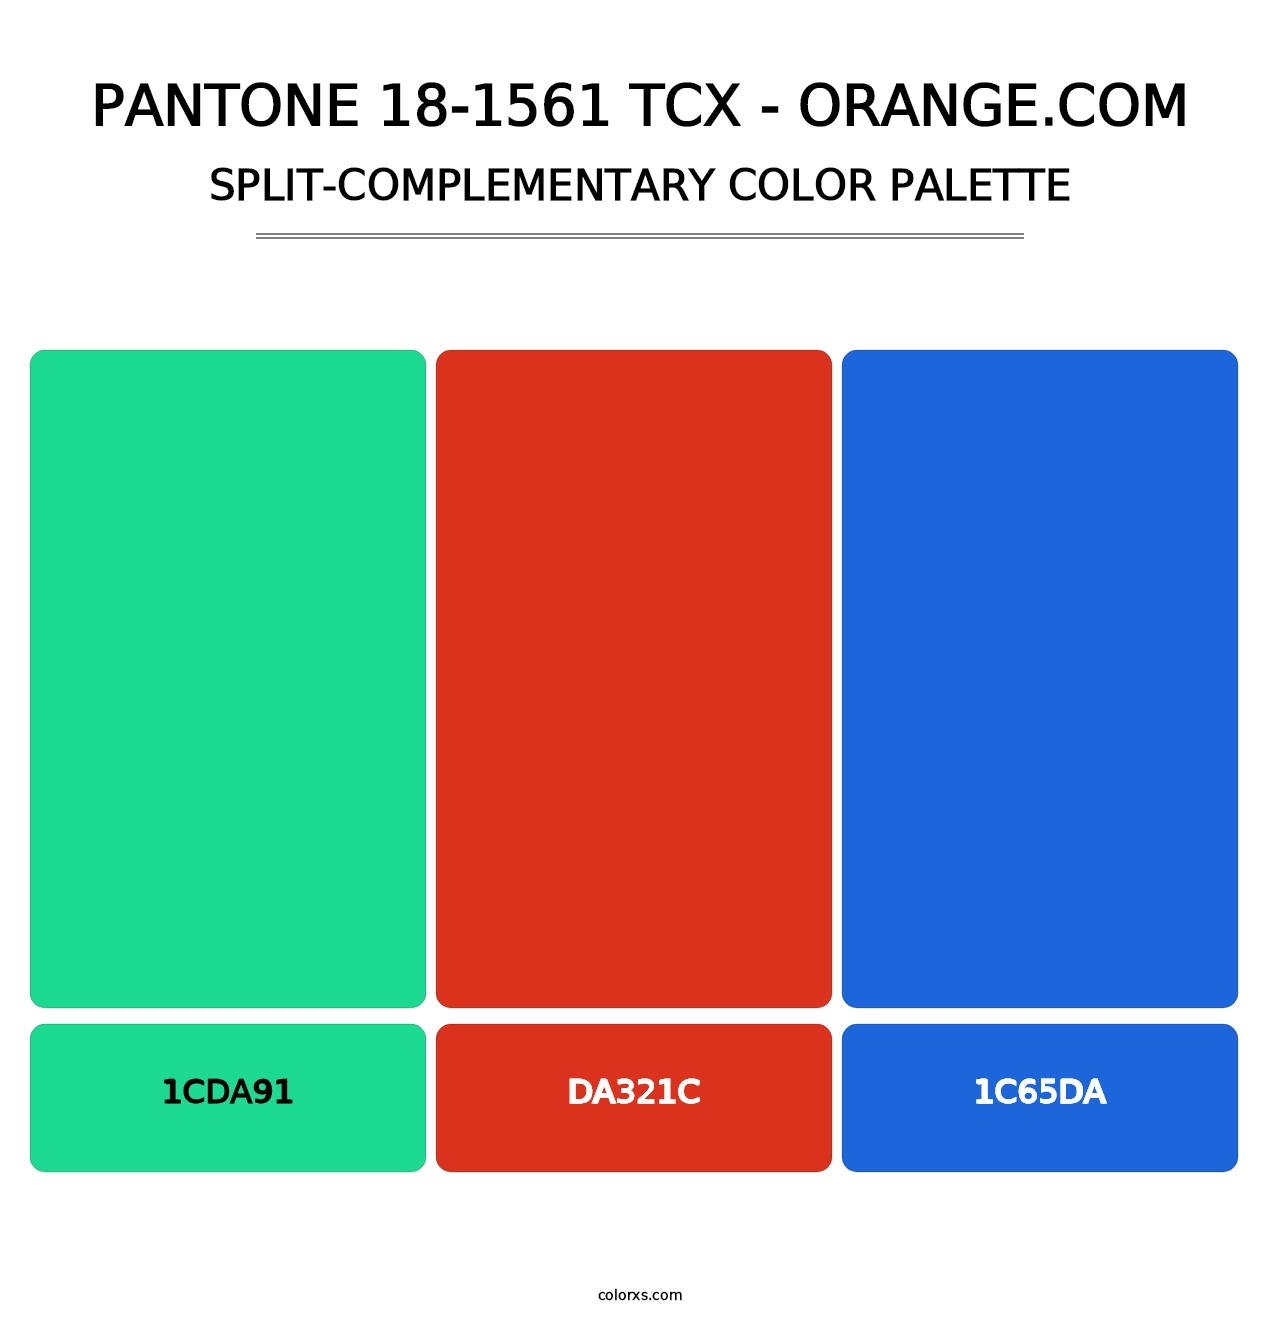 PANTONE 18-1561 TCX - Orange.com - Split-Complementary Color Palette